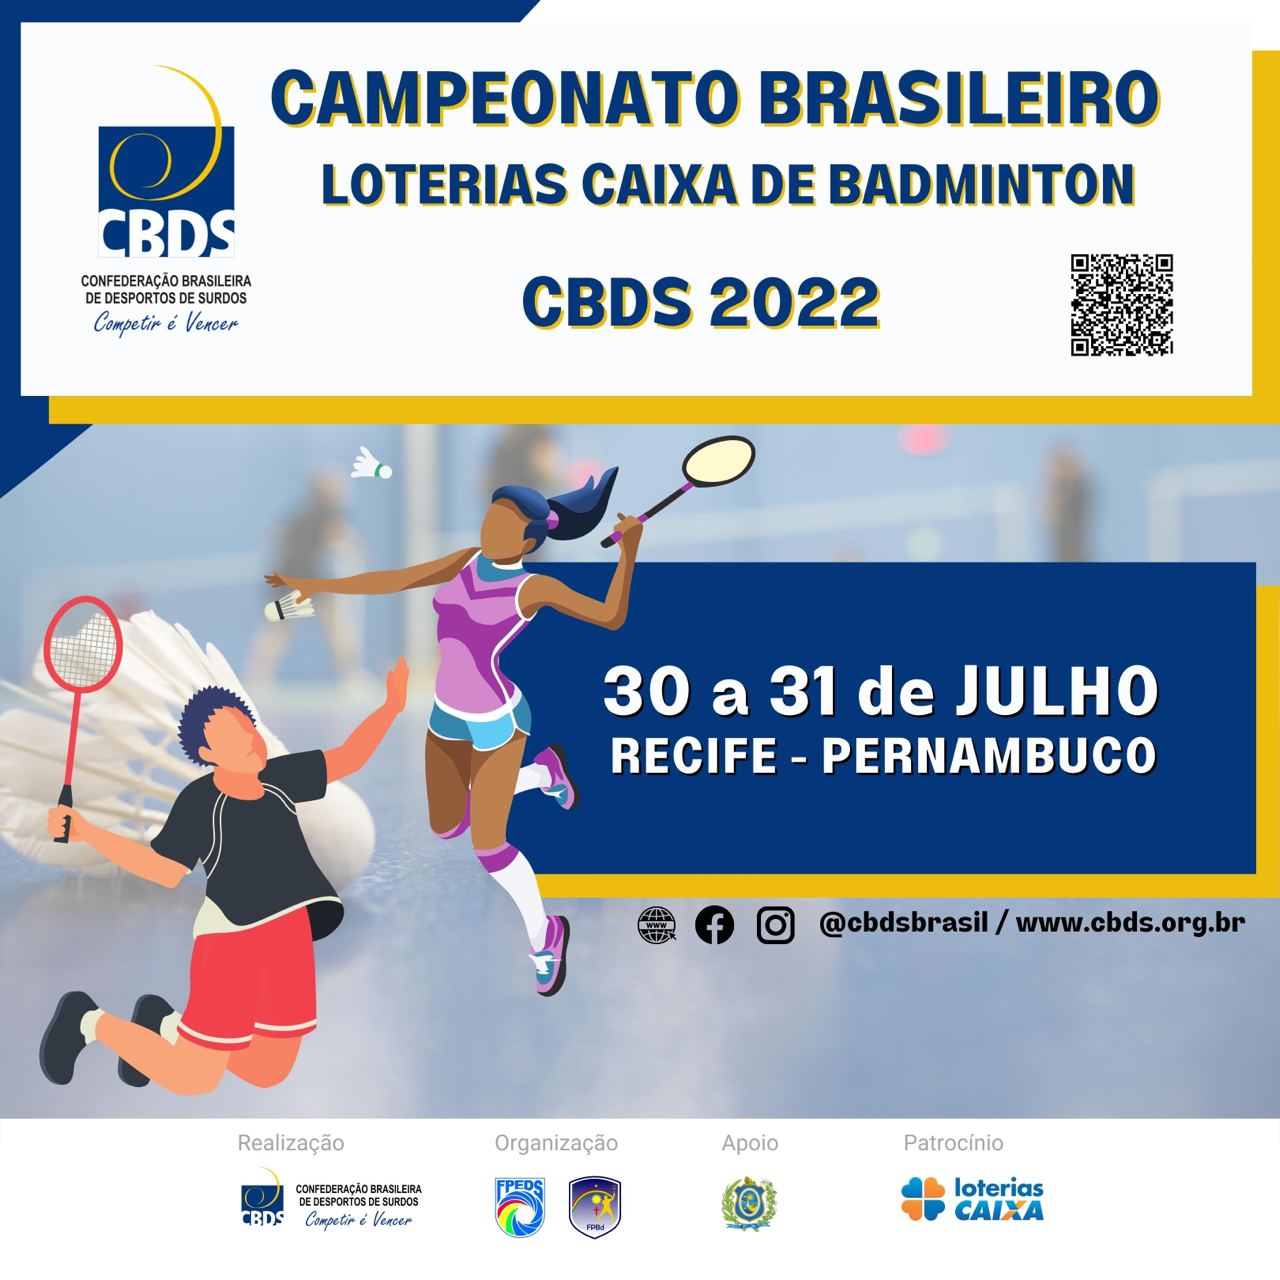 Campeonato Brasileiro Loterias Caixa de Badminton 2022